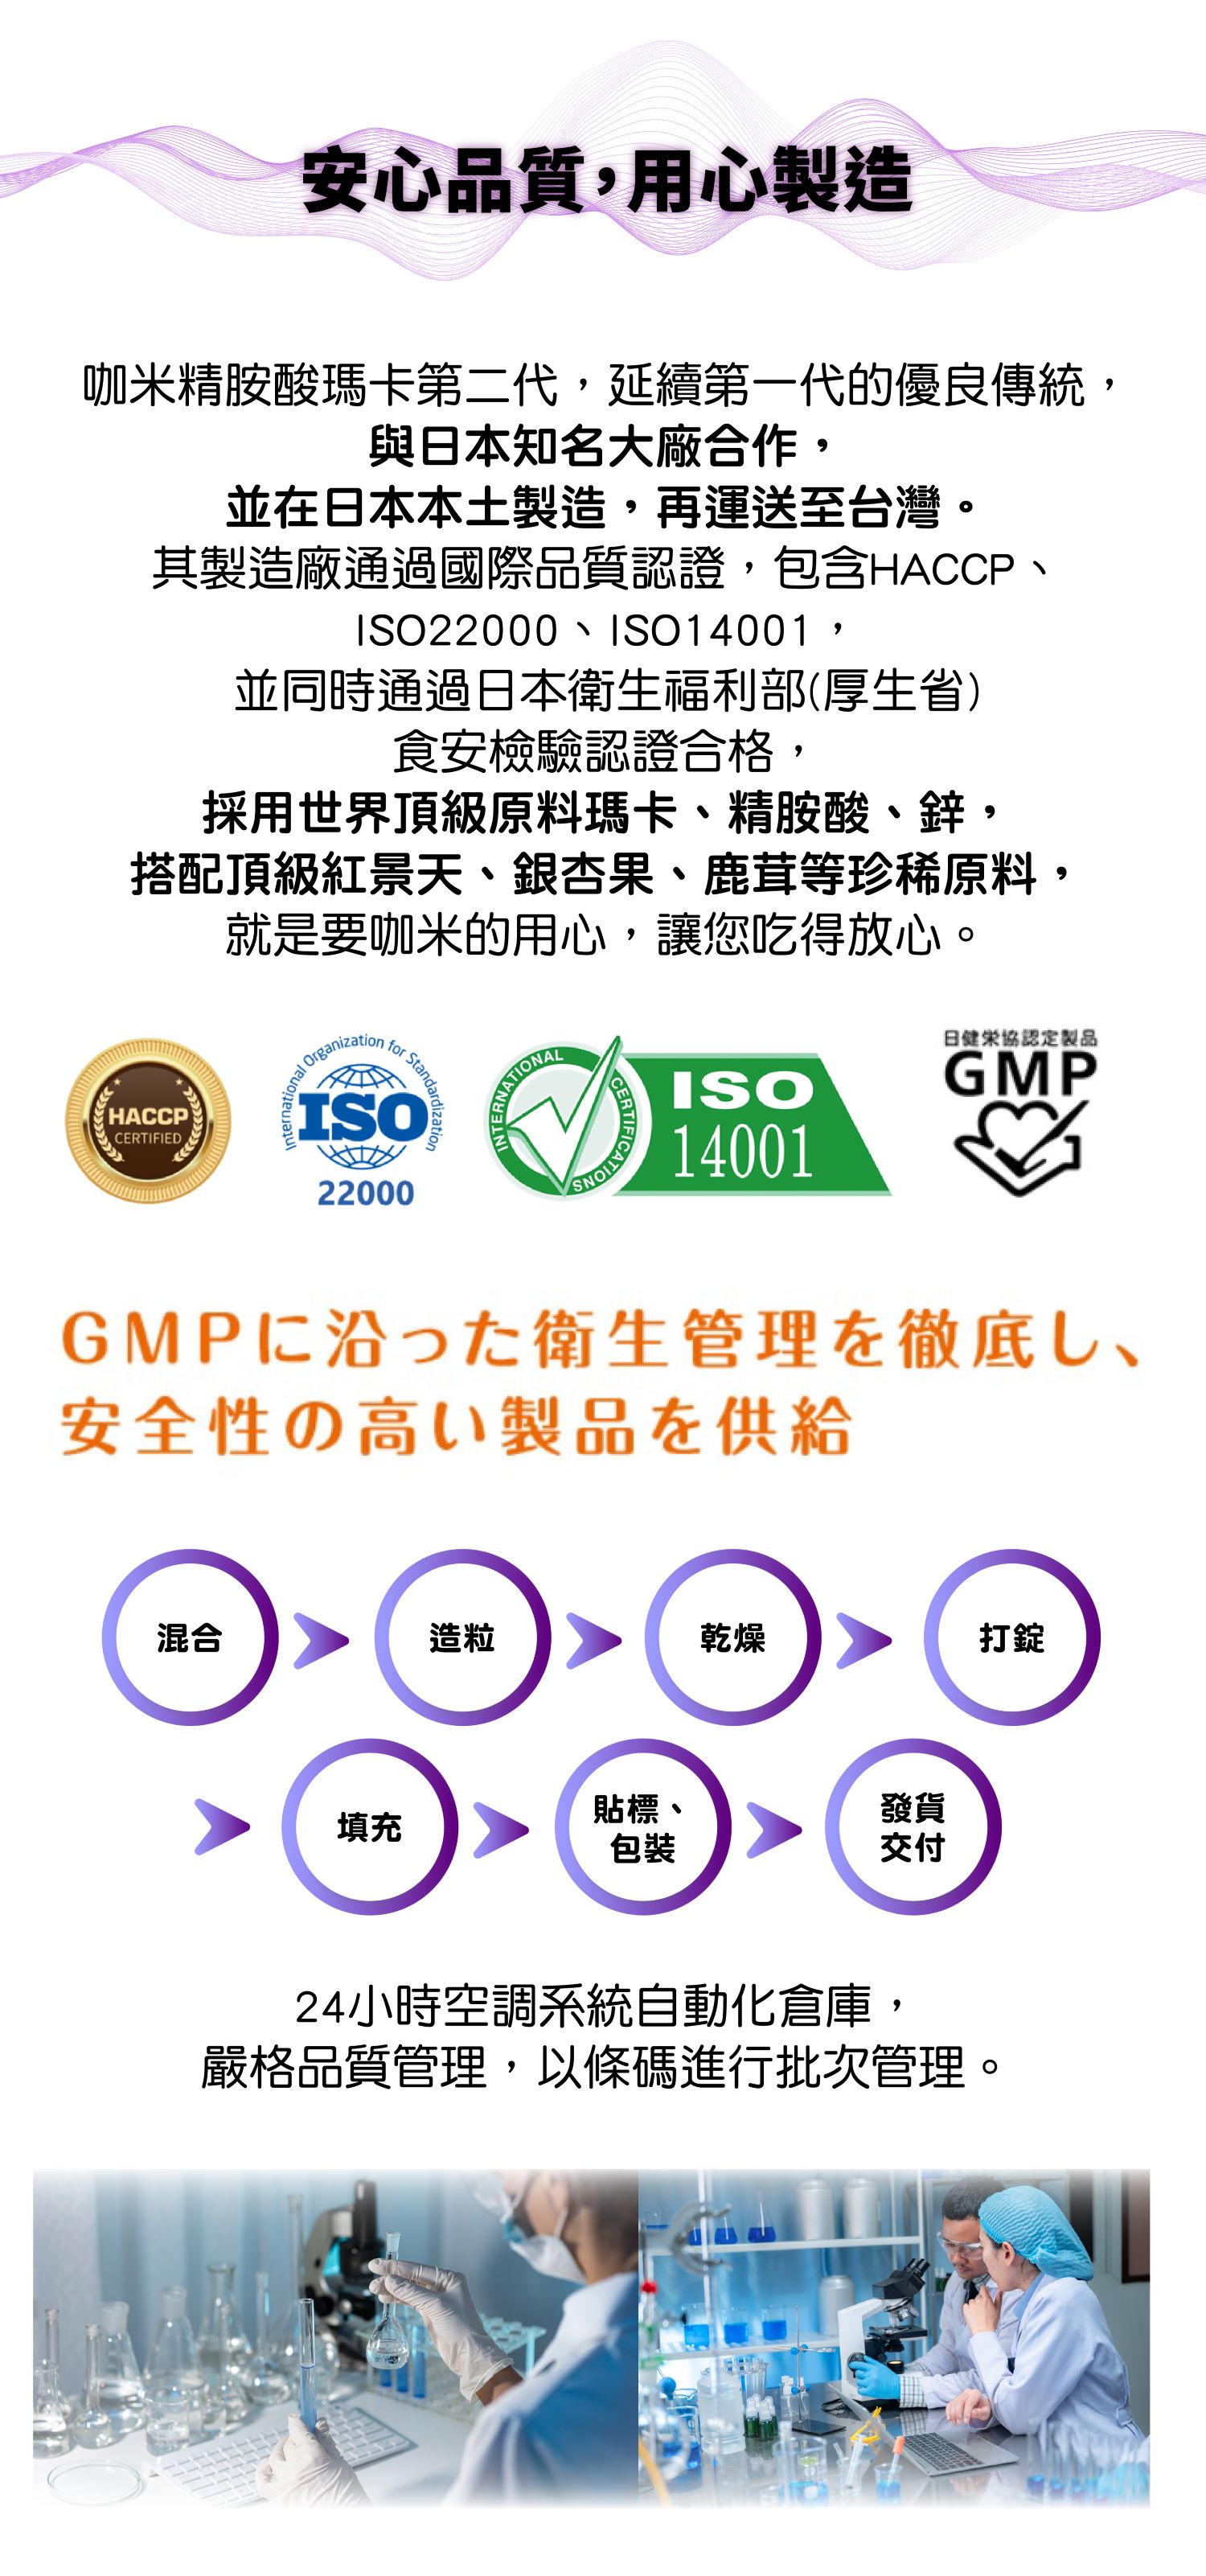 安心品質，用心製造   咖米精胺酸瑪卡第二代，延續第一代的優良傳統，與日本知名大廠合作，並在日本本土製造，再運送至台灣。其製造廠通過國際品質認證，包含HACCP、ISO22000、ISO14001，並同時通過日本衛生福利部(厚生省)食安檢驗認證合格，採用世界頂級原料瑪卡、精胺酸、鋅，搭配頂級紅景天、銀杏果、鹿茸等珍稀原料，就是要咖米的用心，讓您吃得放心。